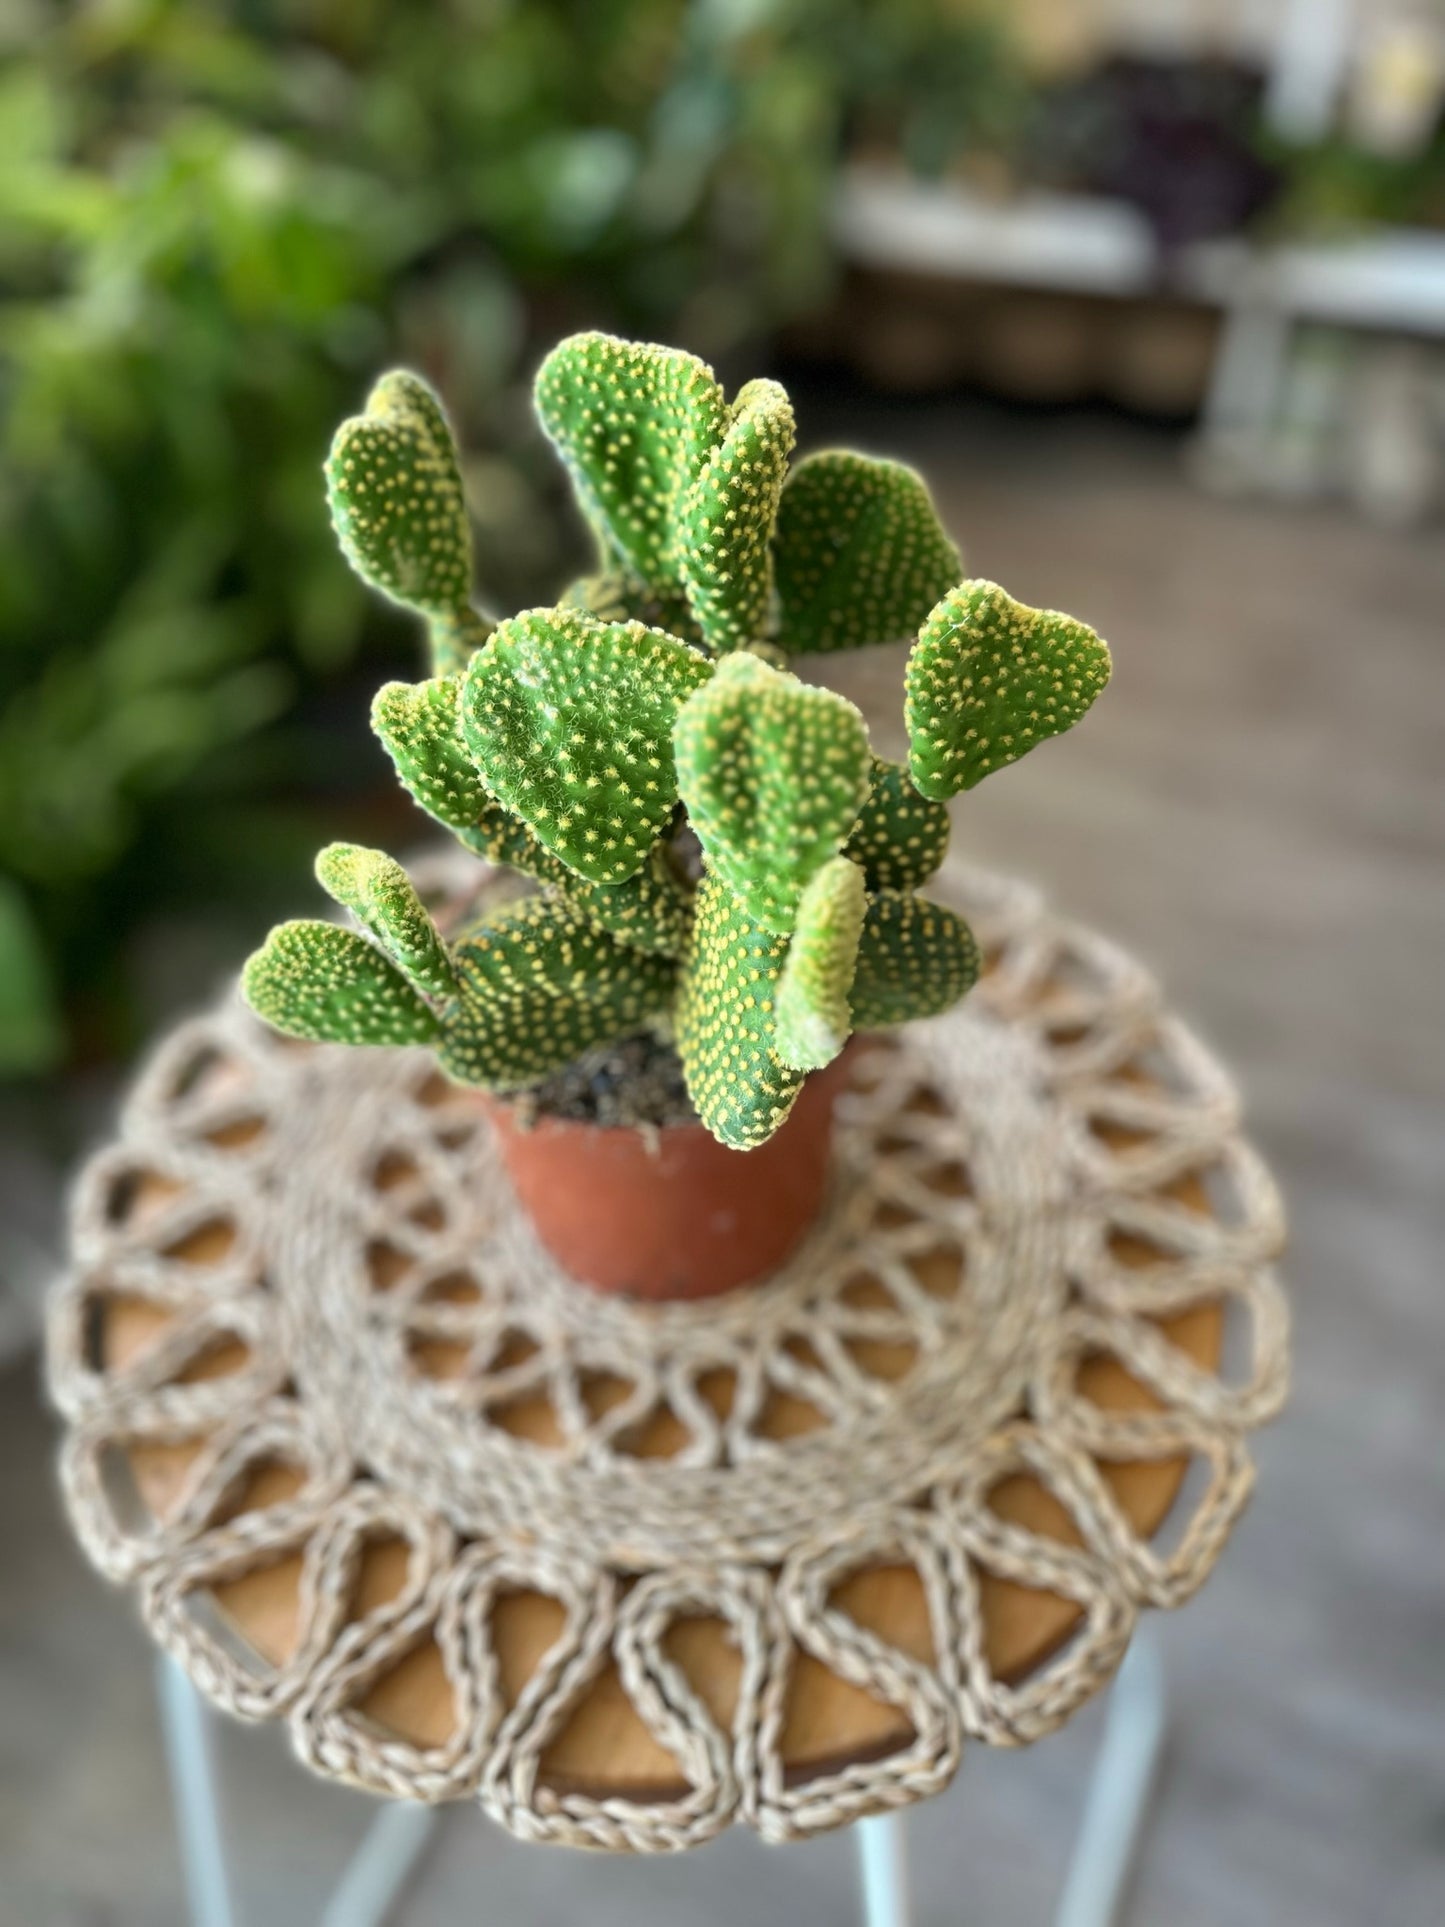 Opuntia Cactus